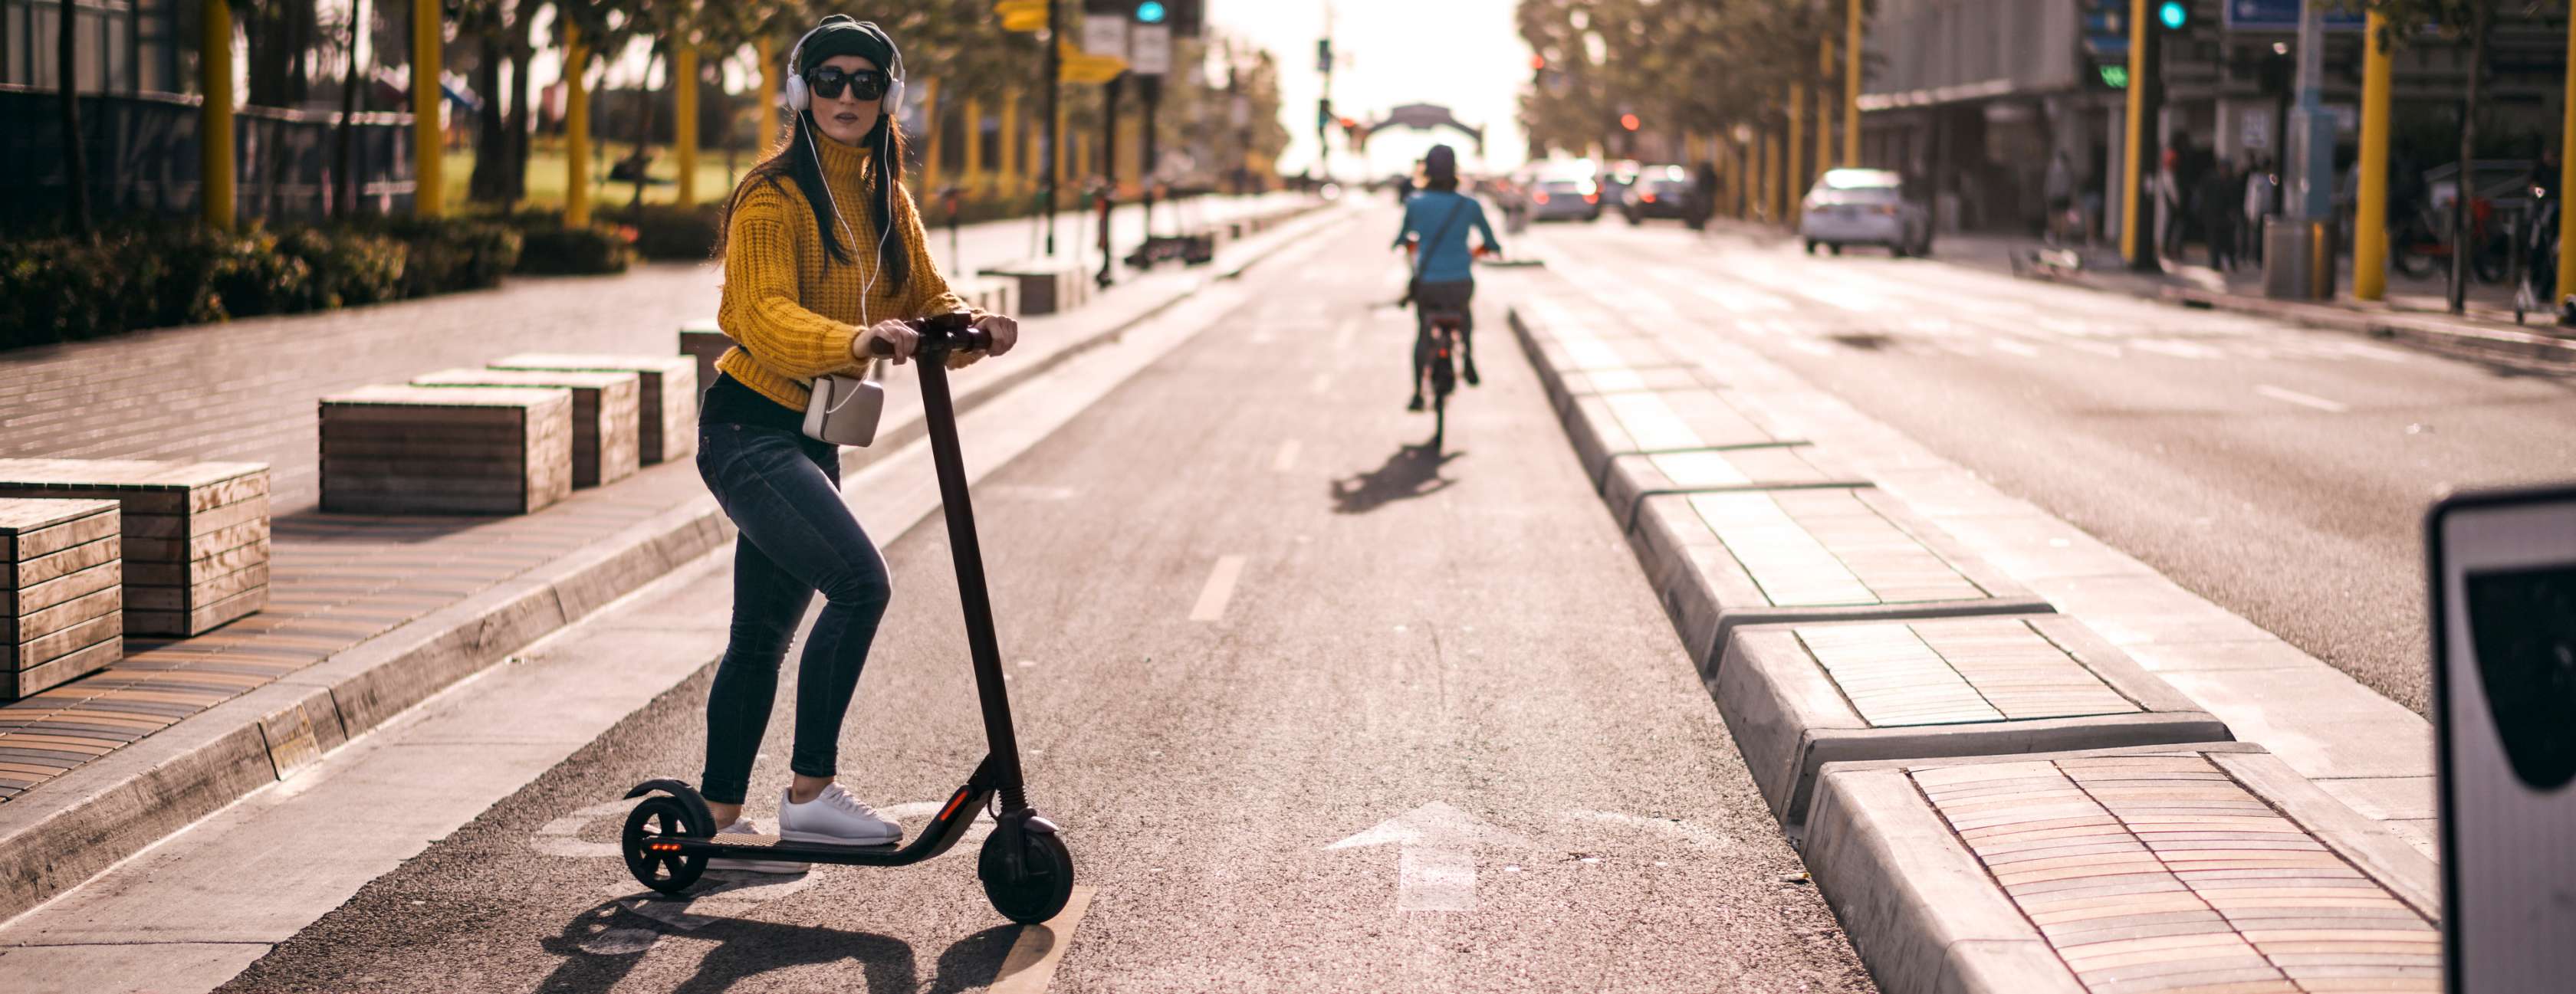 Frau fährt mit Elektro-Scooter auf Radweg